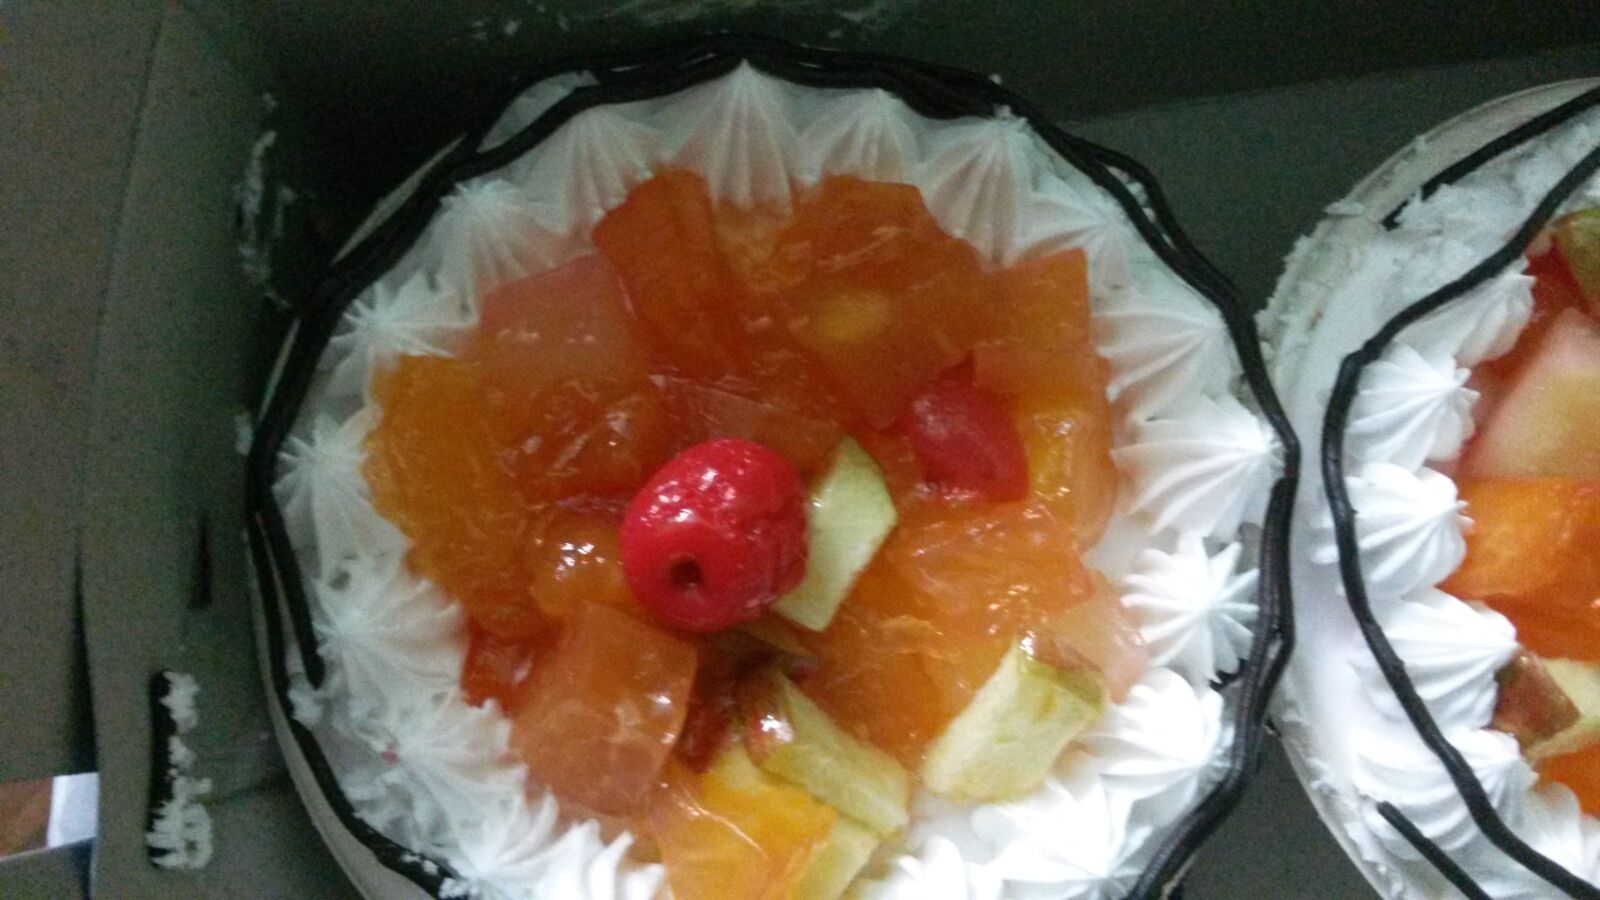 Samsung Galaxy Mega 6.3 sample photo. Fruit cake, cake, fruit photography